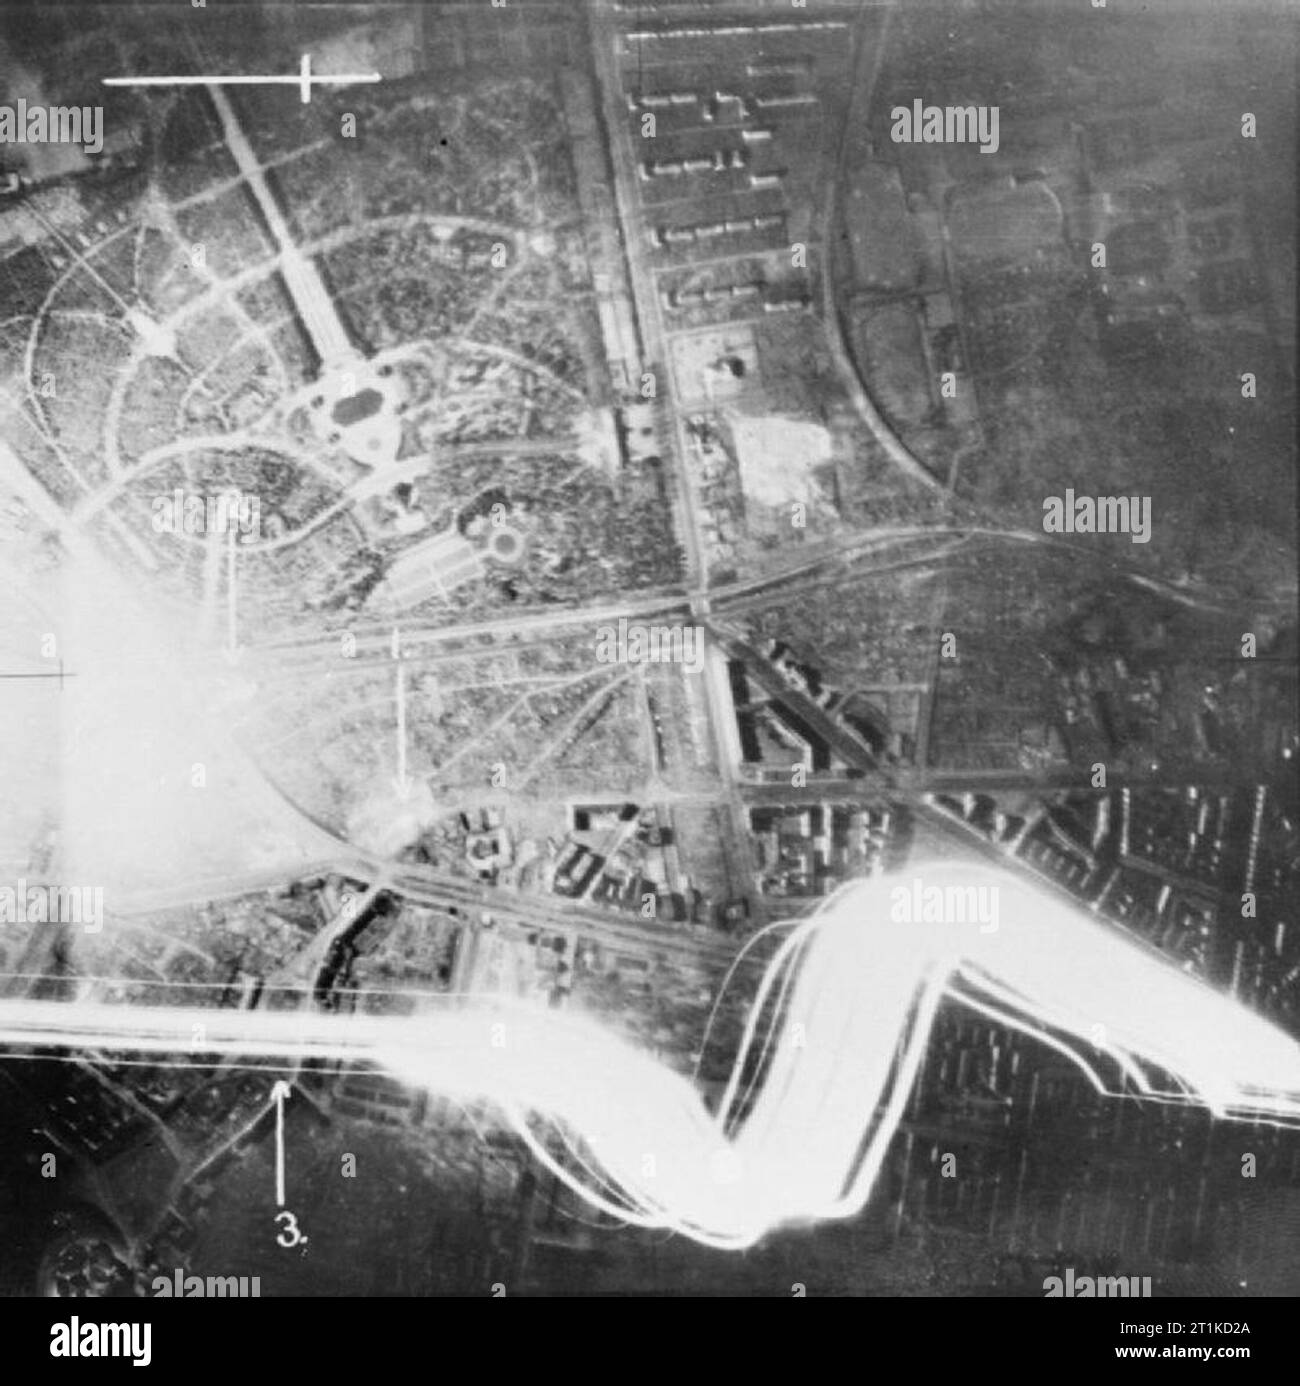 Royal Air Force Bomber Command, 1939-1941. Vertikale Luftaufnahme über Stettin zu Beginn der Nacht Angriff genommen, vielleicht, dass vom 14.-15. Oktober 1940. Bomben explodieren ('1' und '2') in der Nähe der Viadukt der Bahnlinie auf berlinerstrasse. Stockfoto